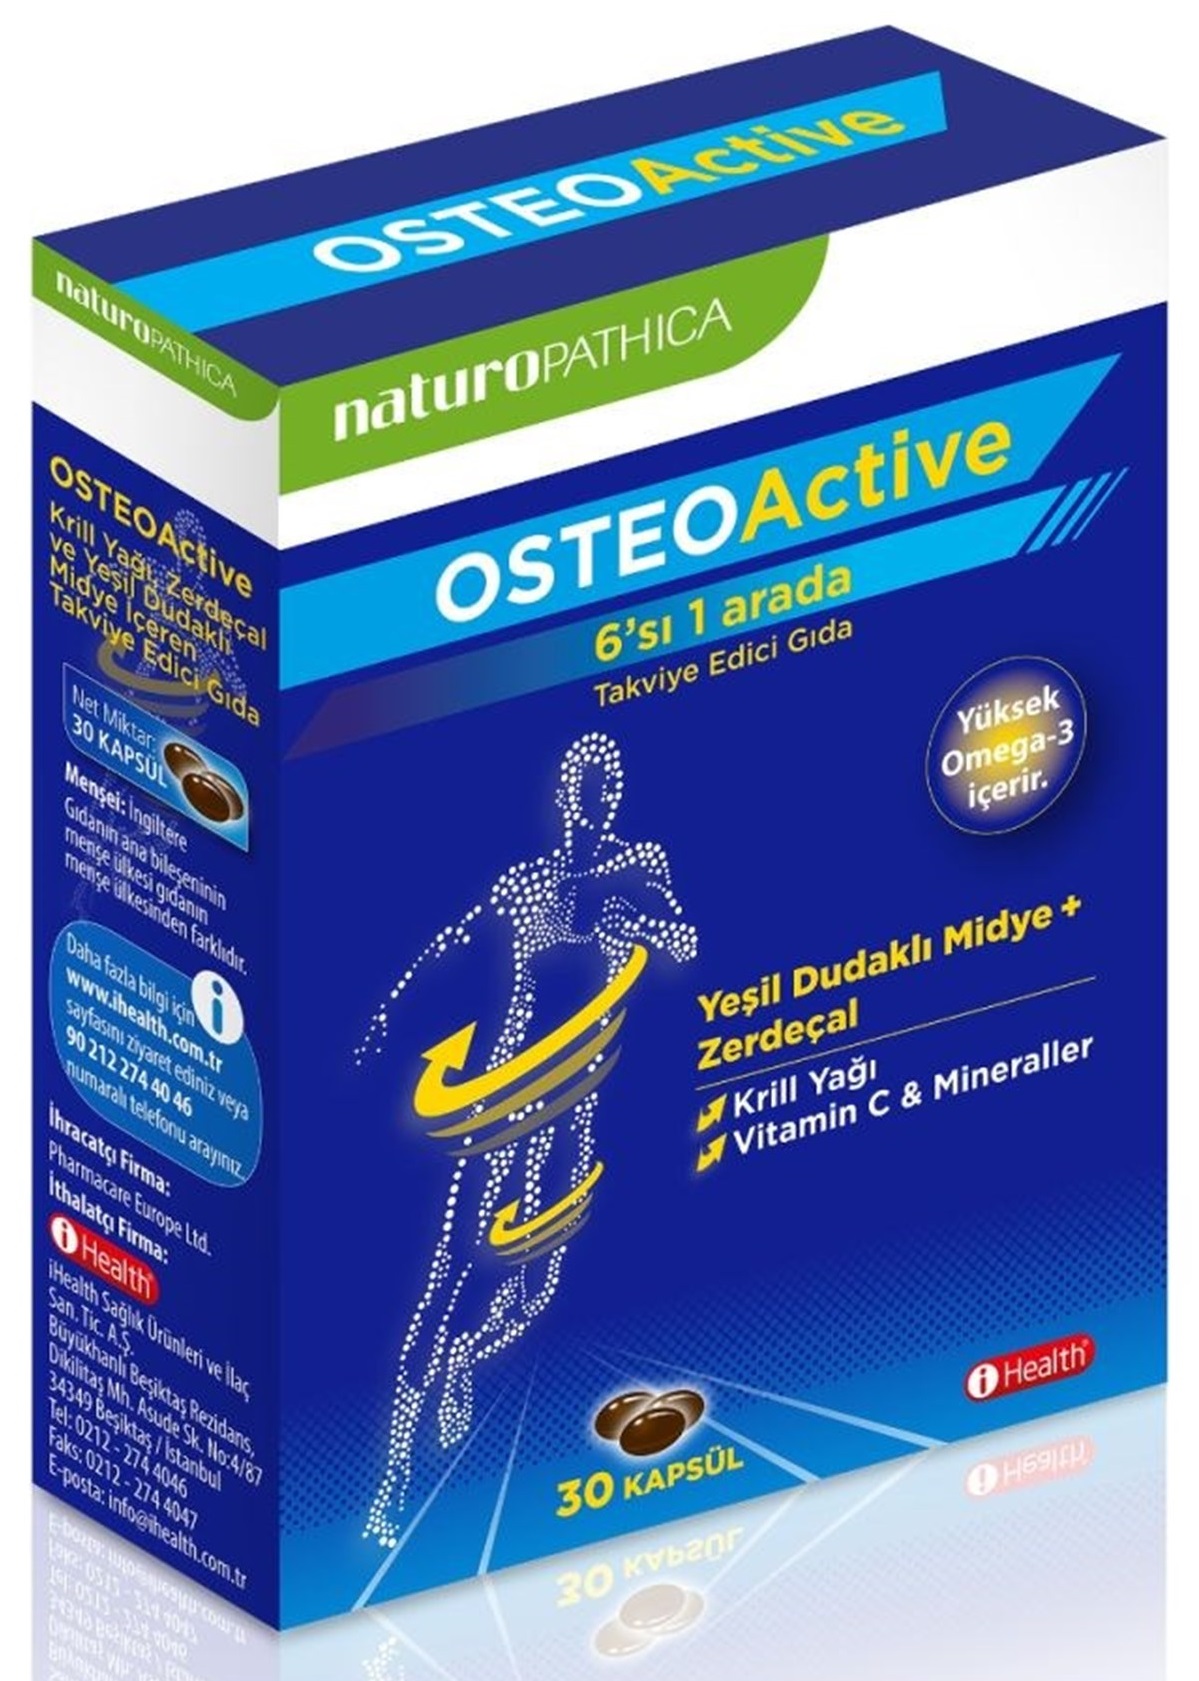 Naturopathica Osteoactive 6'sı 1 Arada Takviye Edici Gıda 30 Kapsül